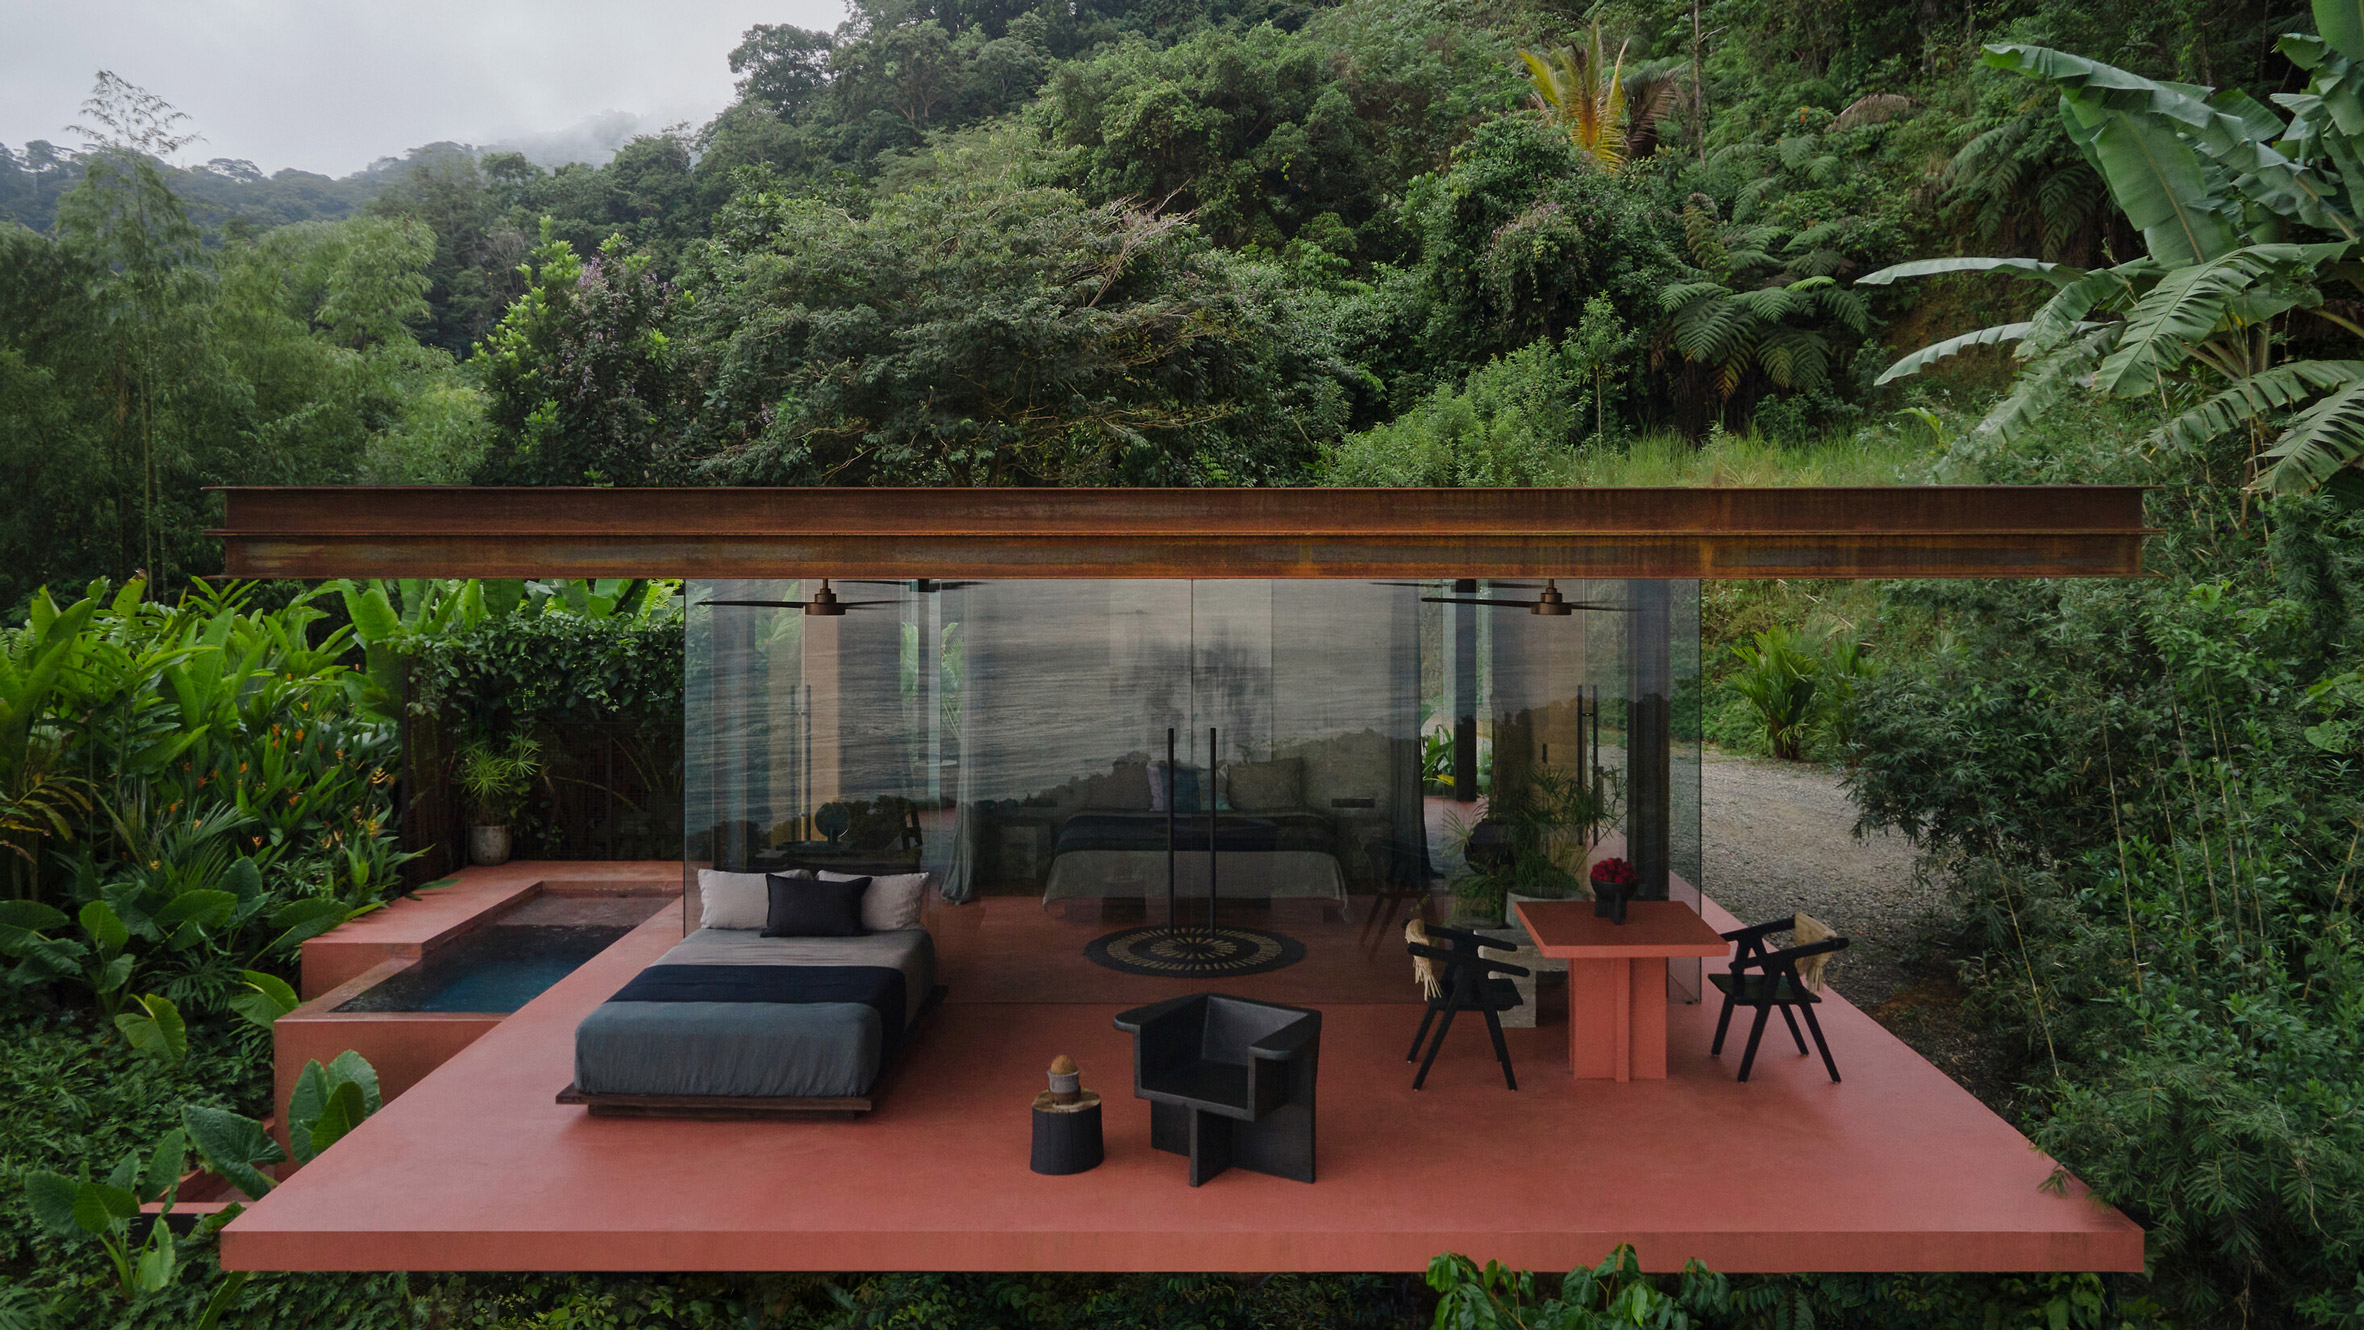 Villa in Costa Rica by Formafatal